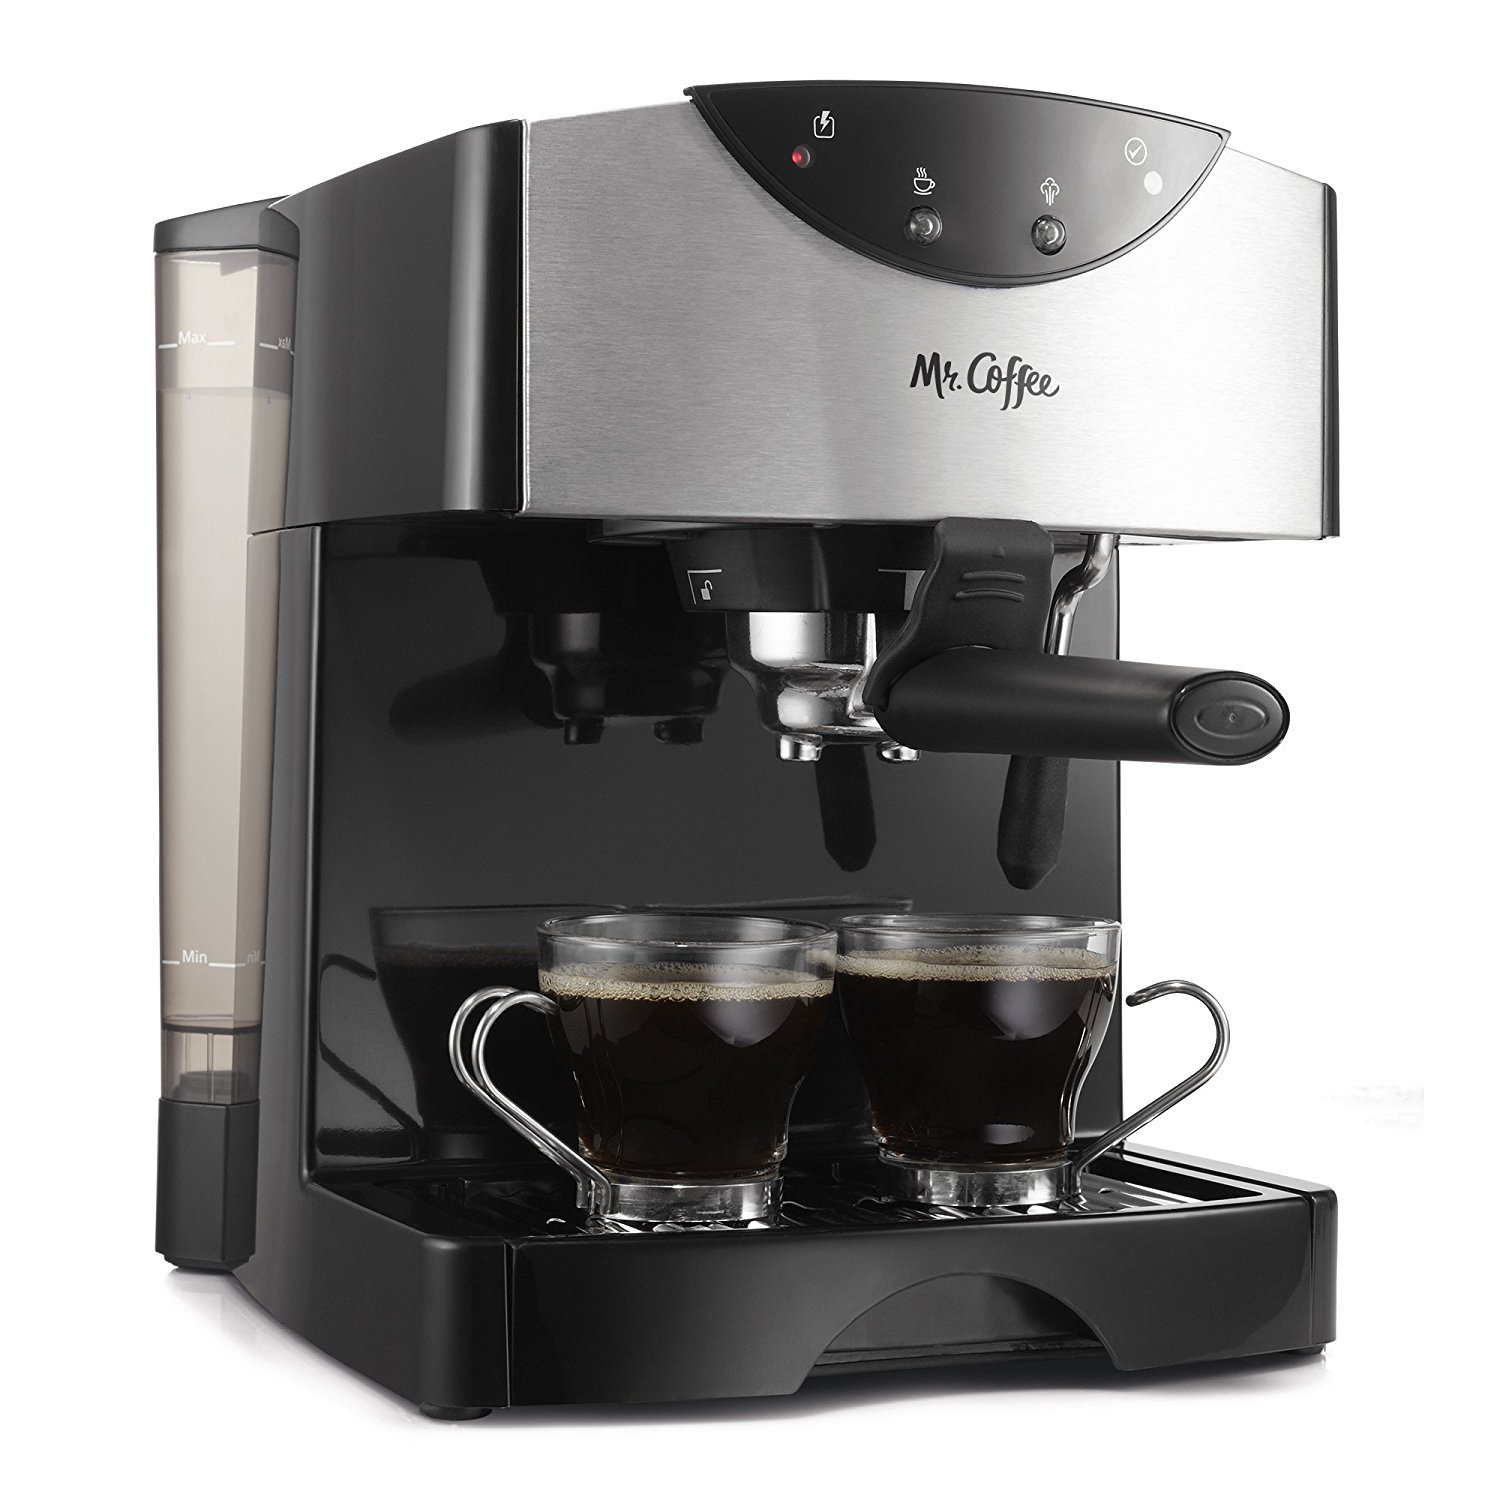 Mr. Coffee 2 Shot Pump Espresso & Cappuccino Maker, Black - image 1 of 8